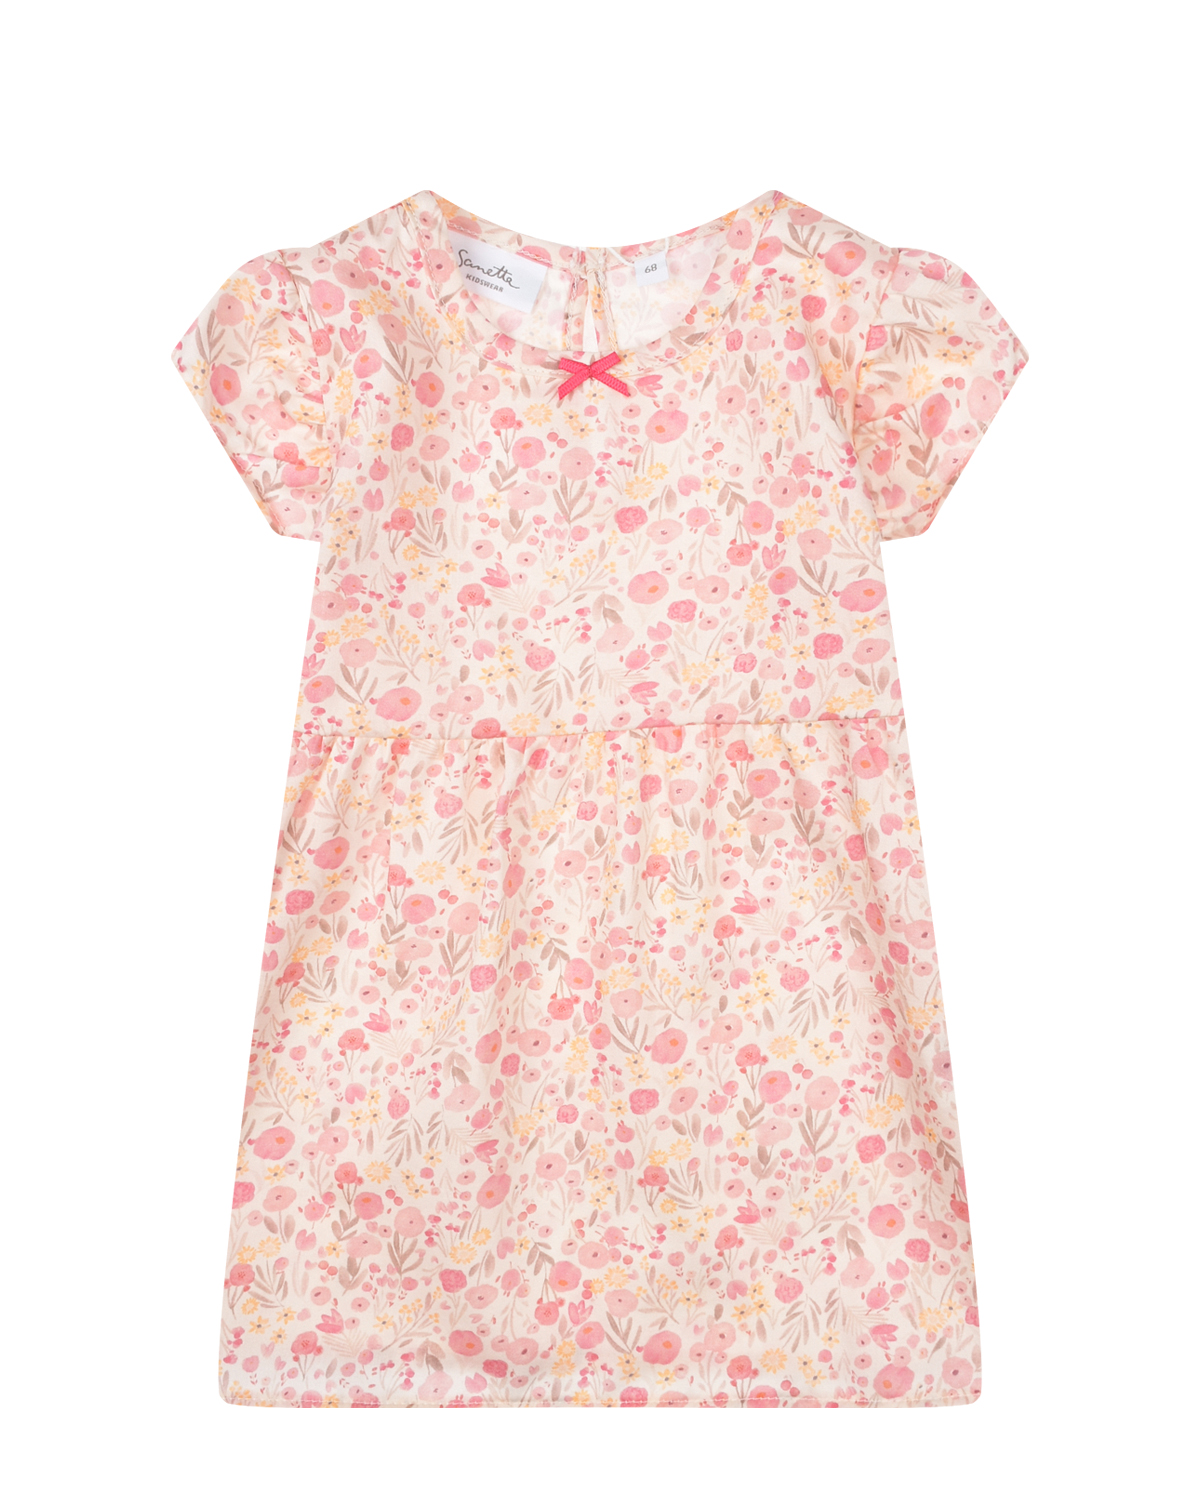 Розовое платье с цветочным принтом Sanetta Kidswear розовое многослойное платье gulliver 158